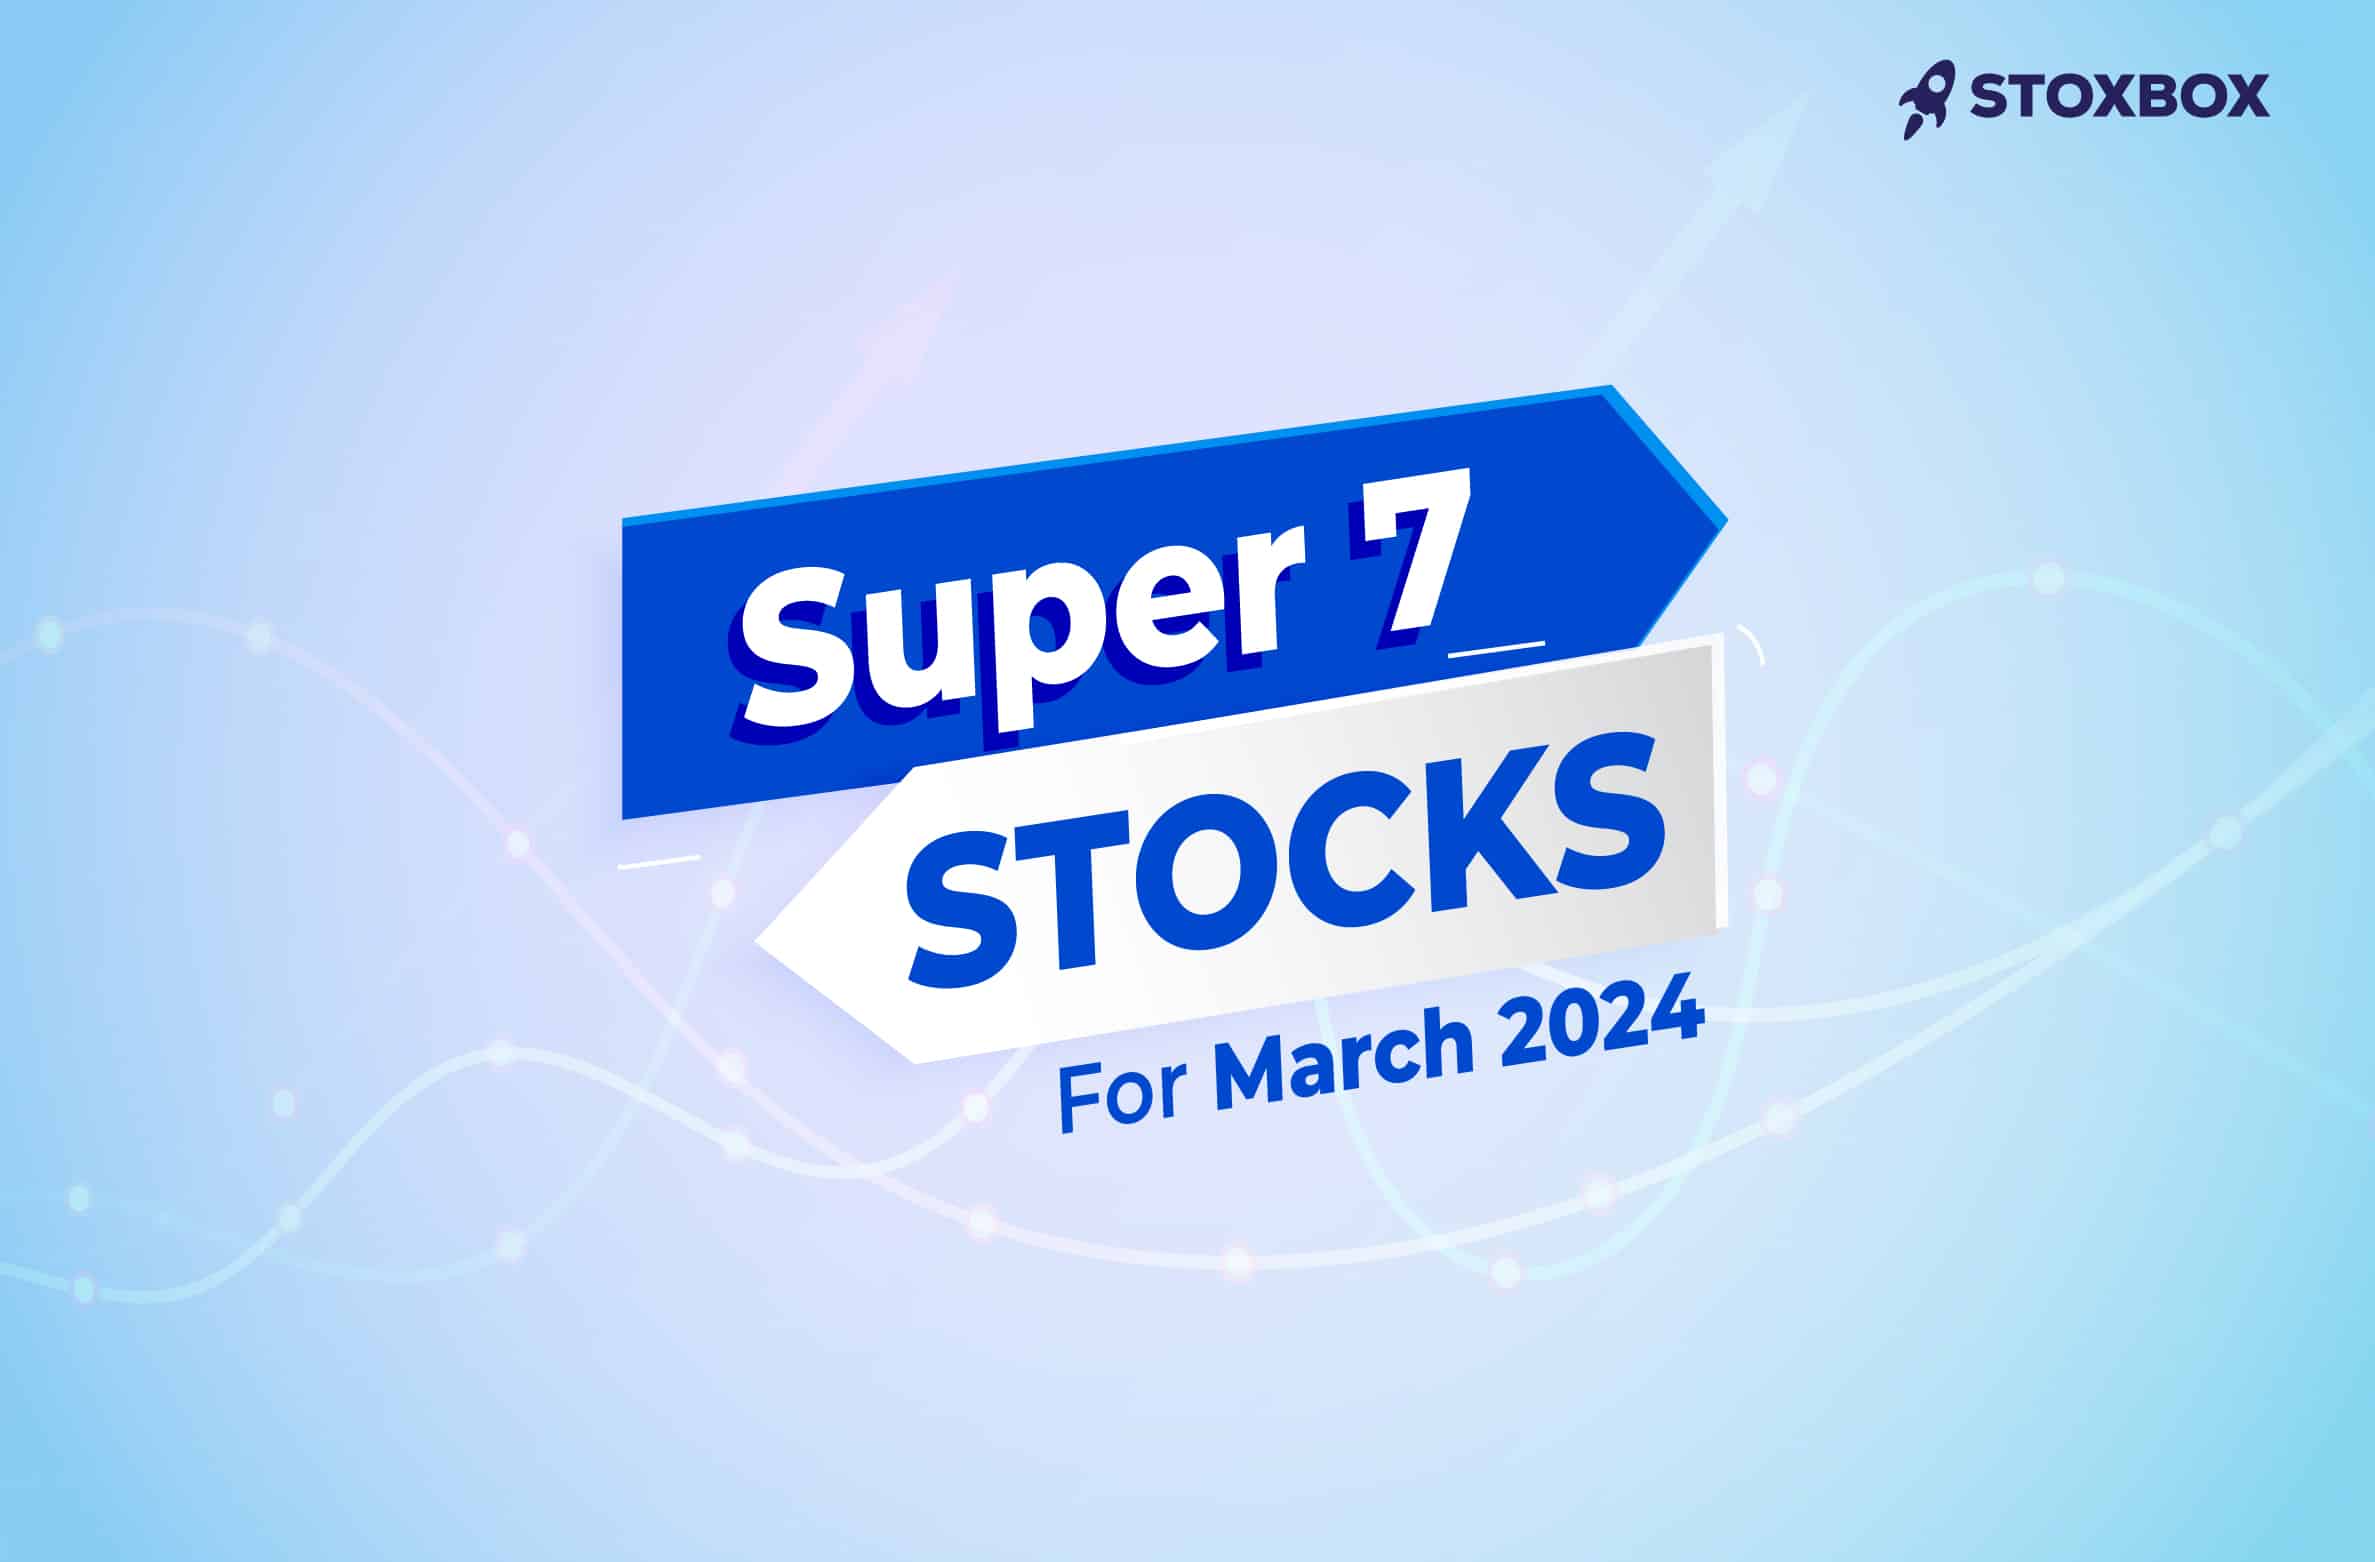 Super 7 stocks for Mar 2024